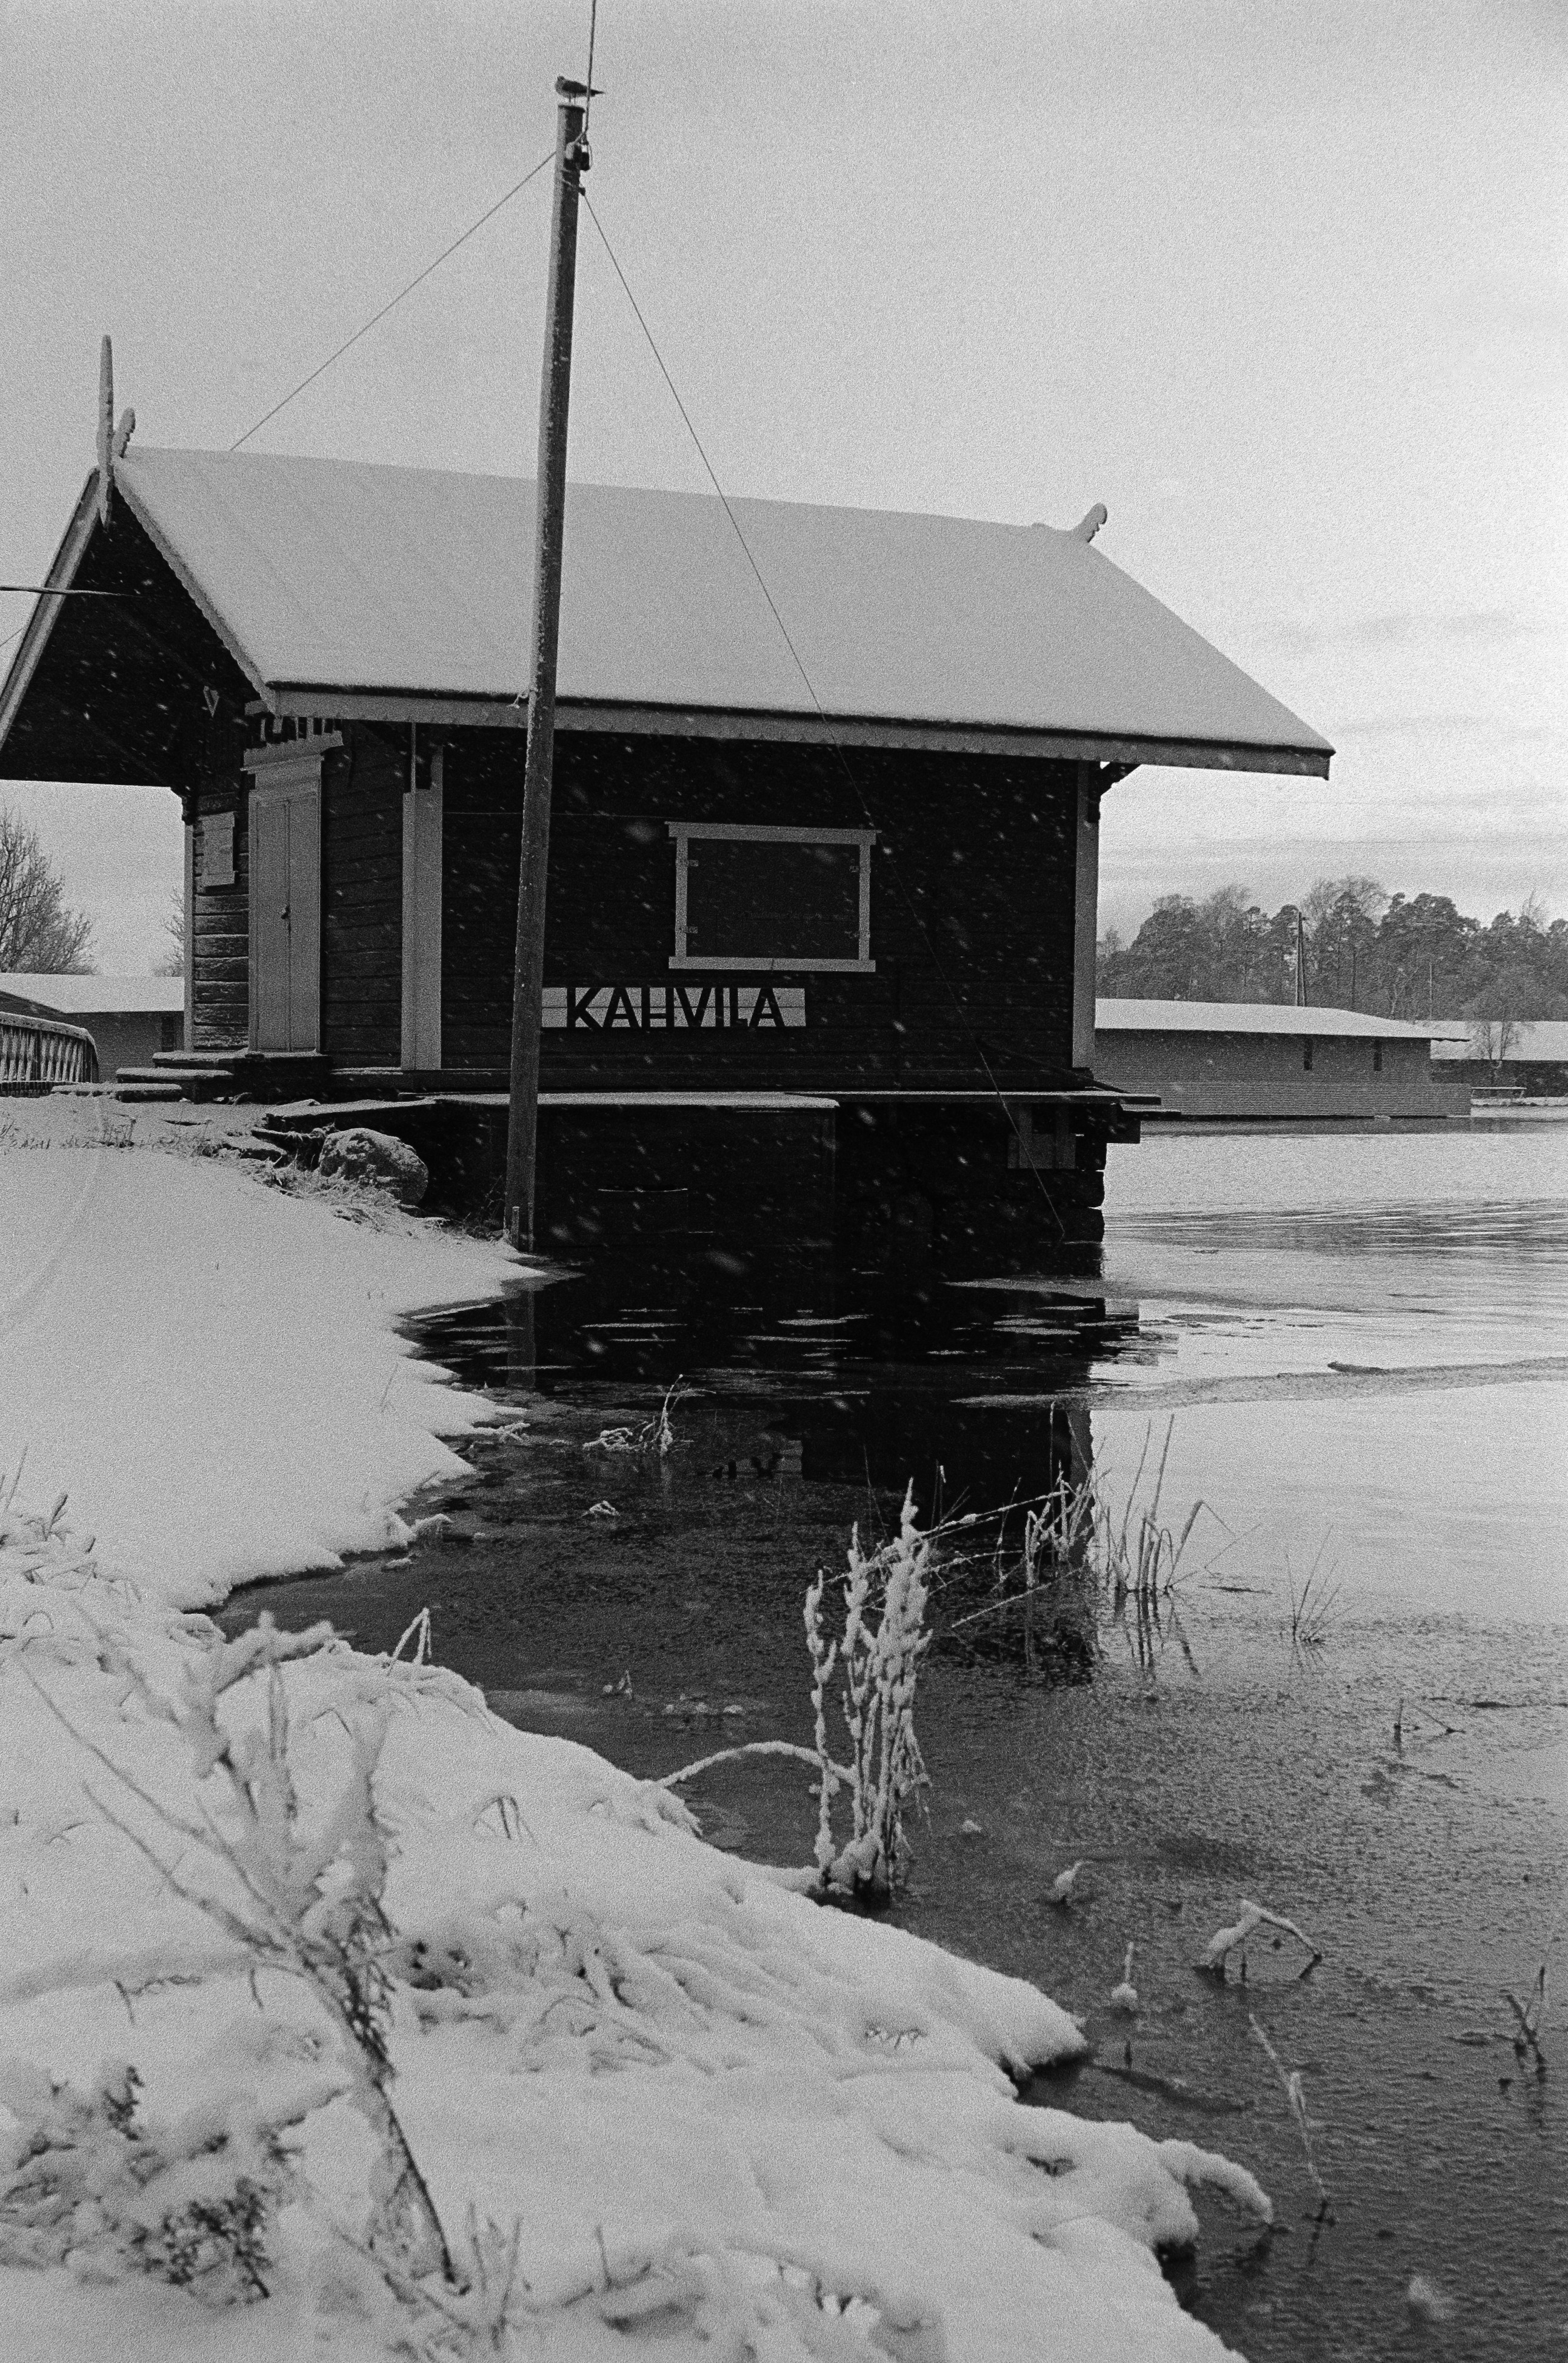 Töölössä, Toivo Kuulan puiston länsikärjessä sijaitseva kahvila Regatta ensilumen aikaan syksyllä 1973.